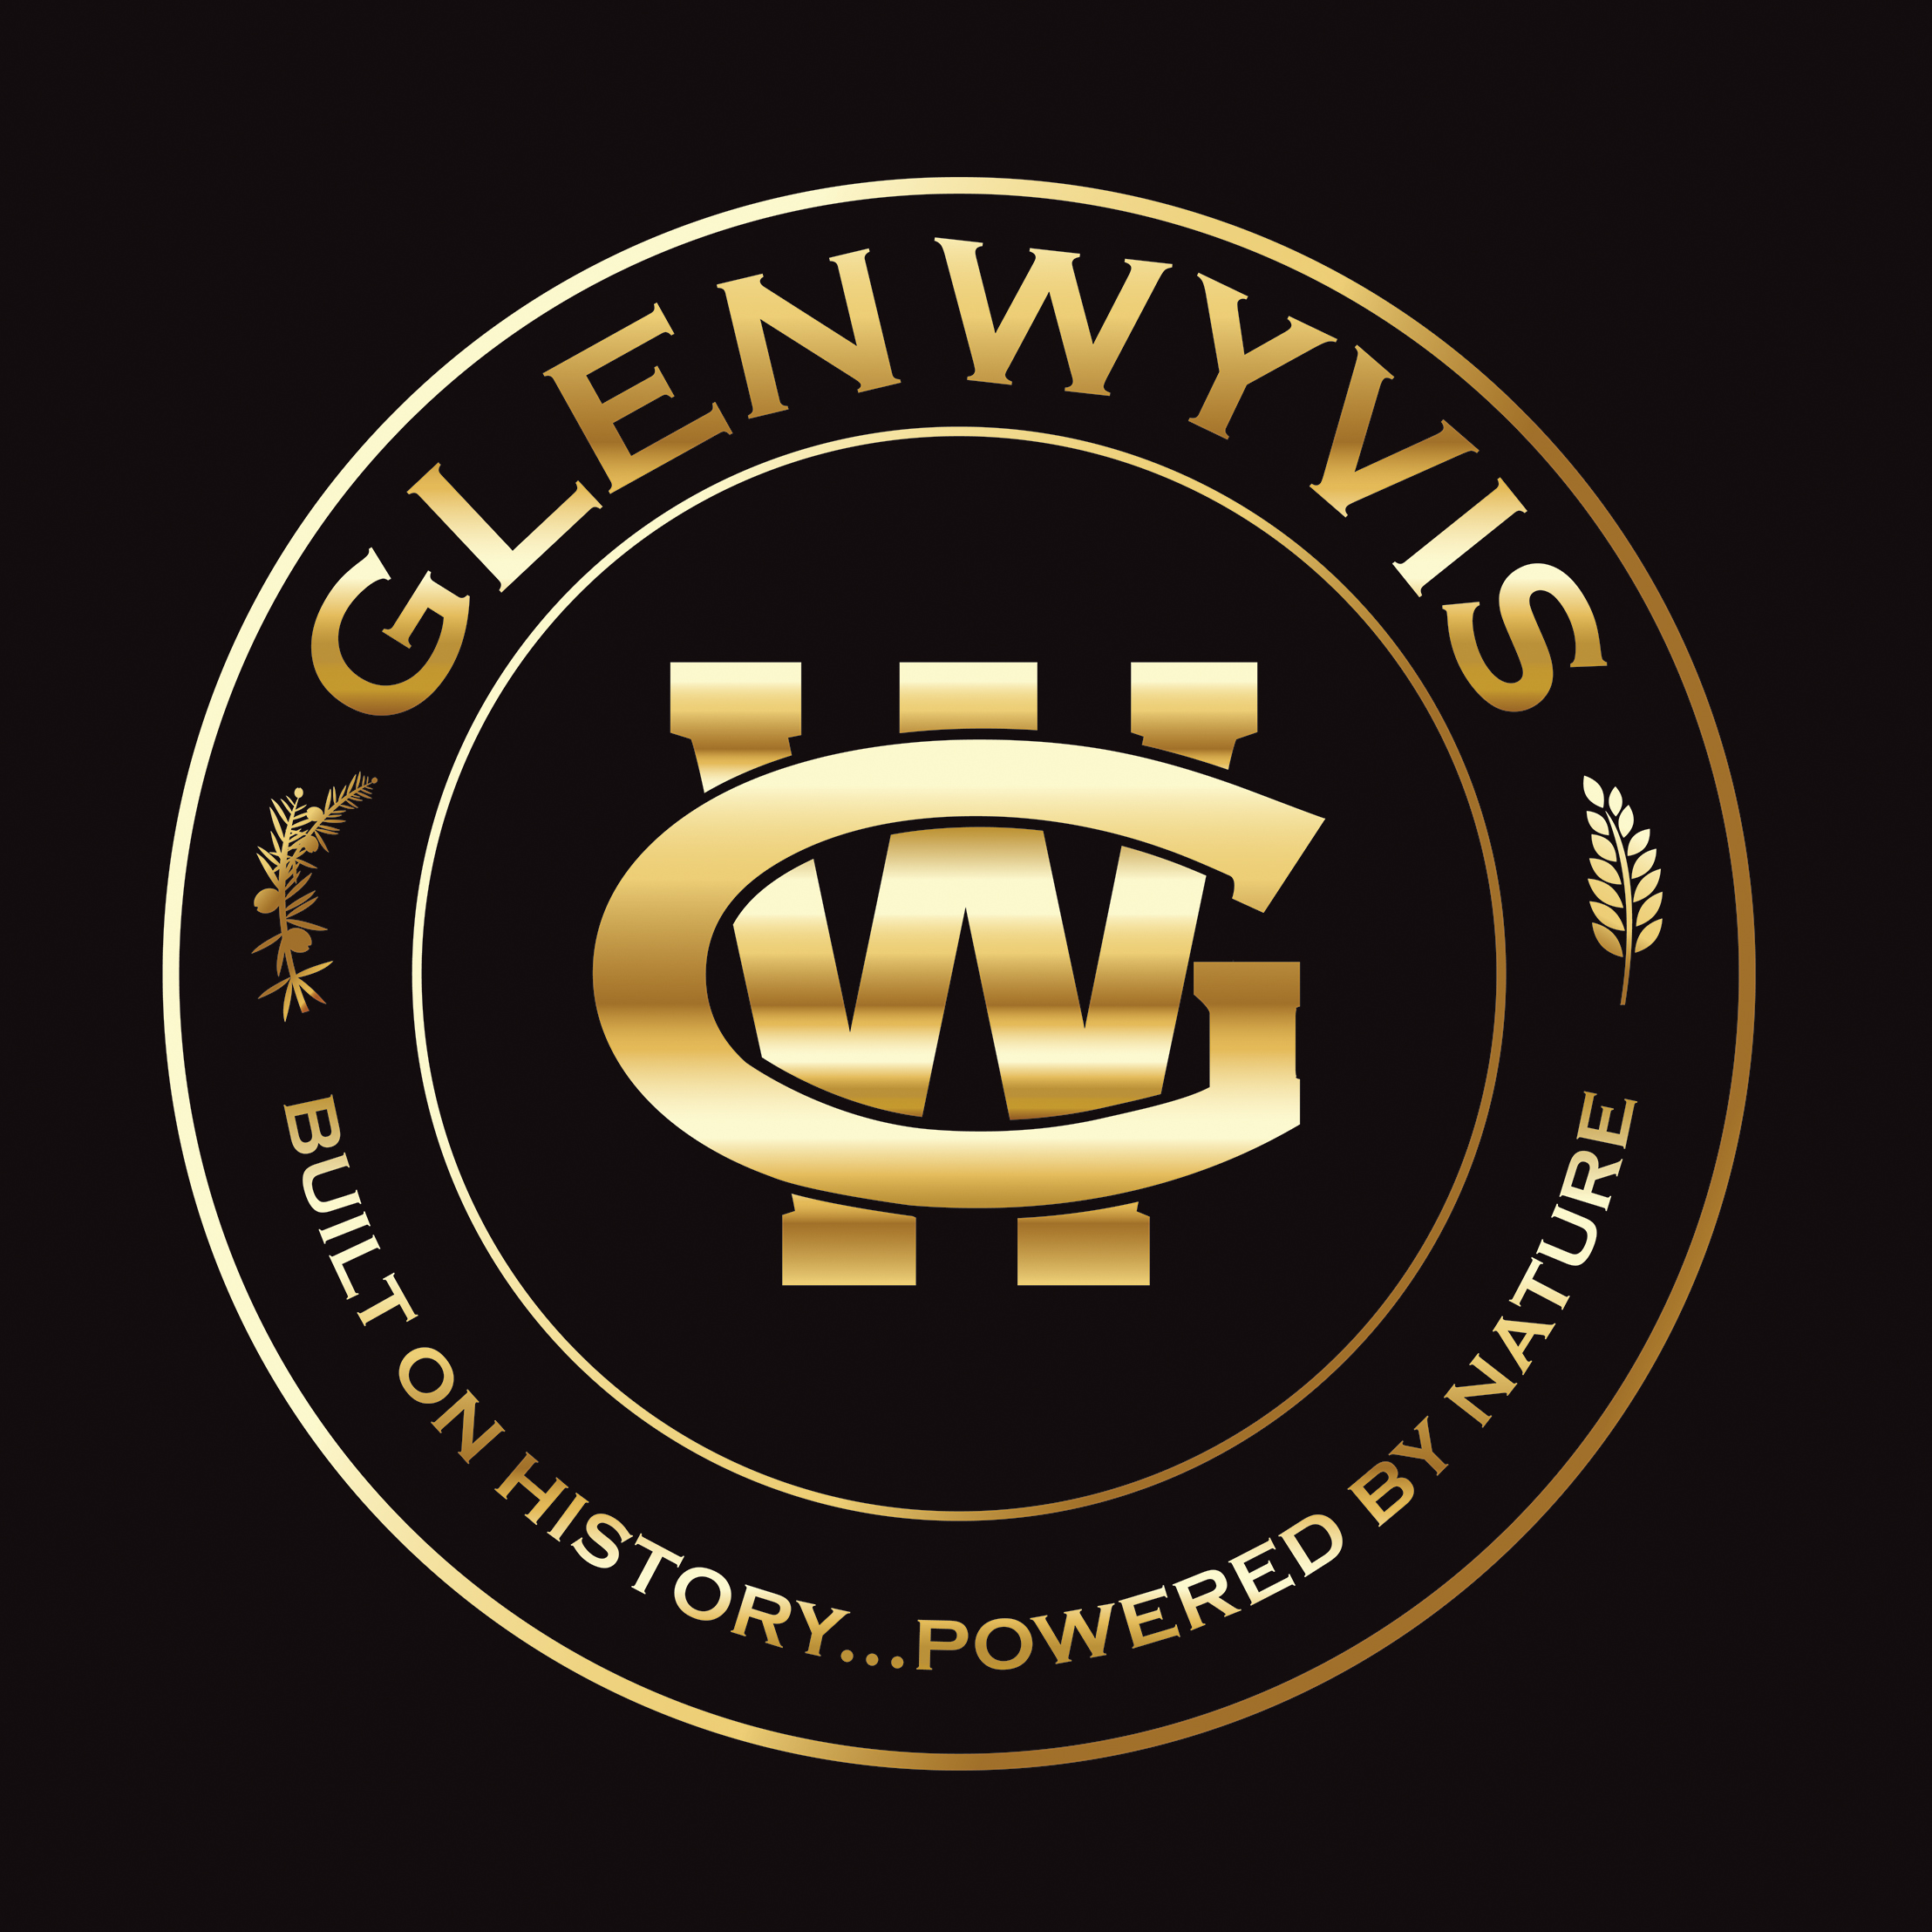 GlenWyvis logo